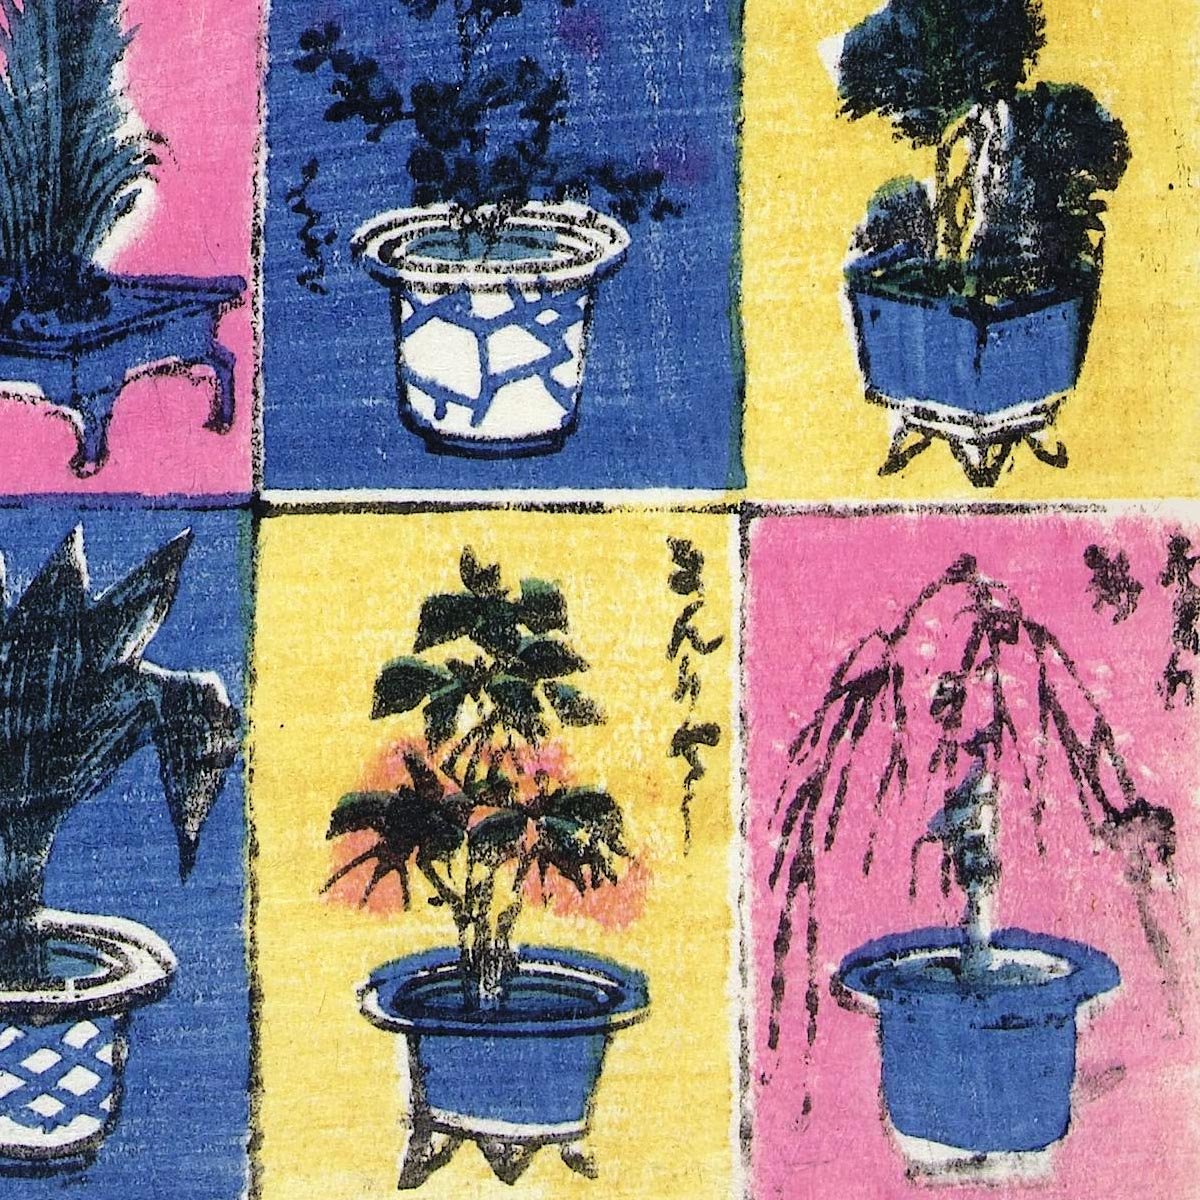 Plants and Flower Arrangements by Utagawa Yoshitsuya